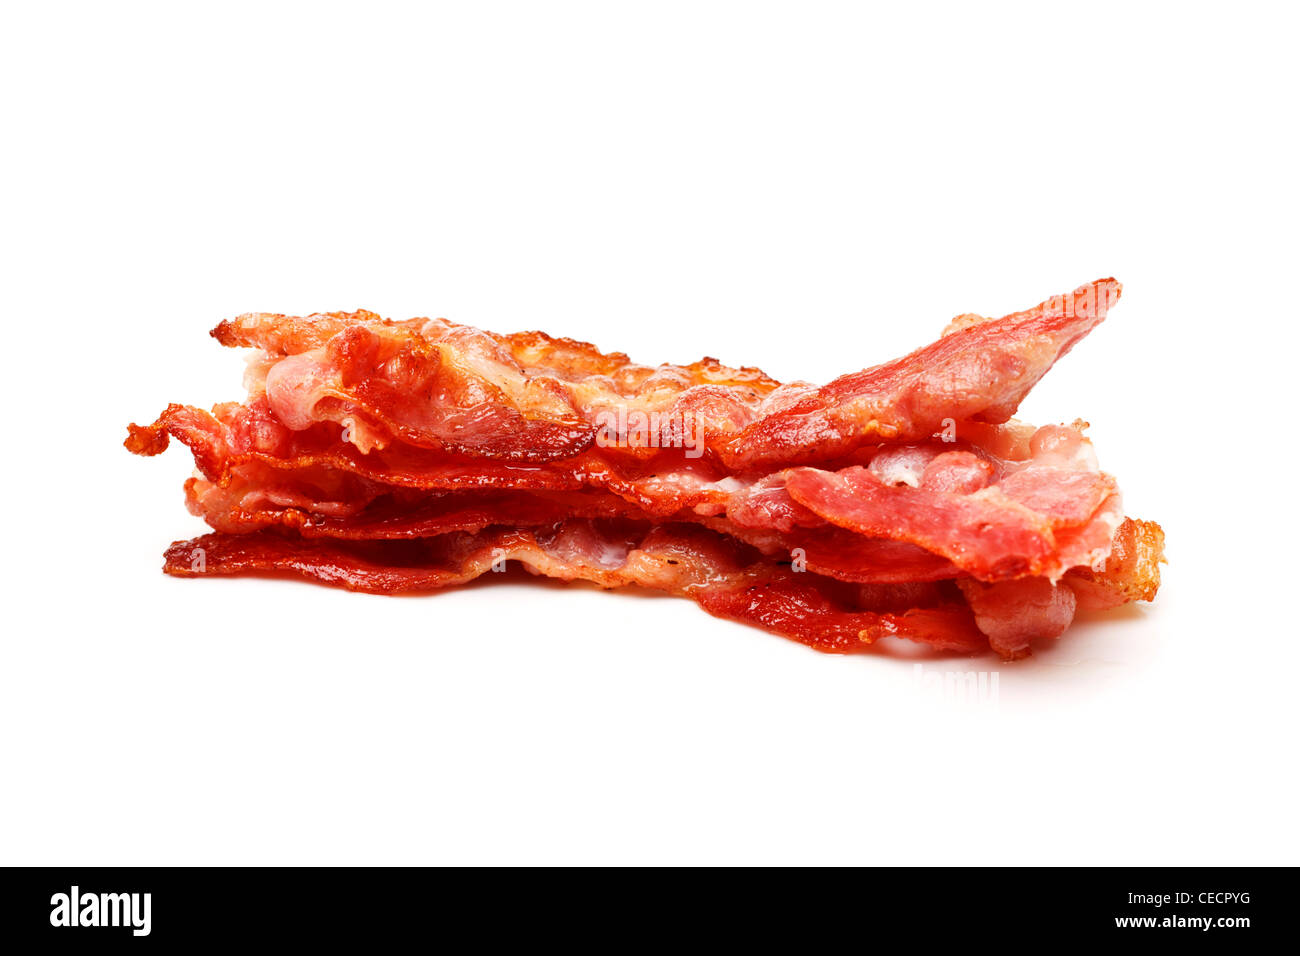 Bacon pile of rashers on white background Stock Photo